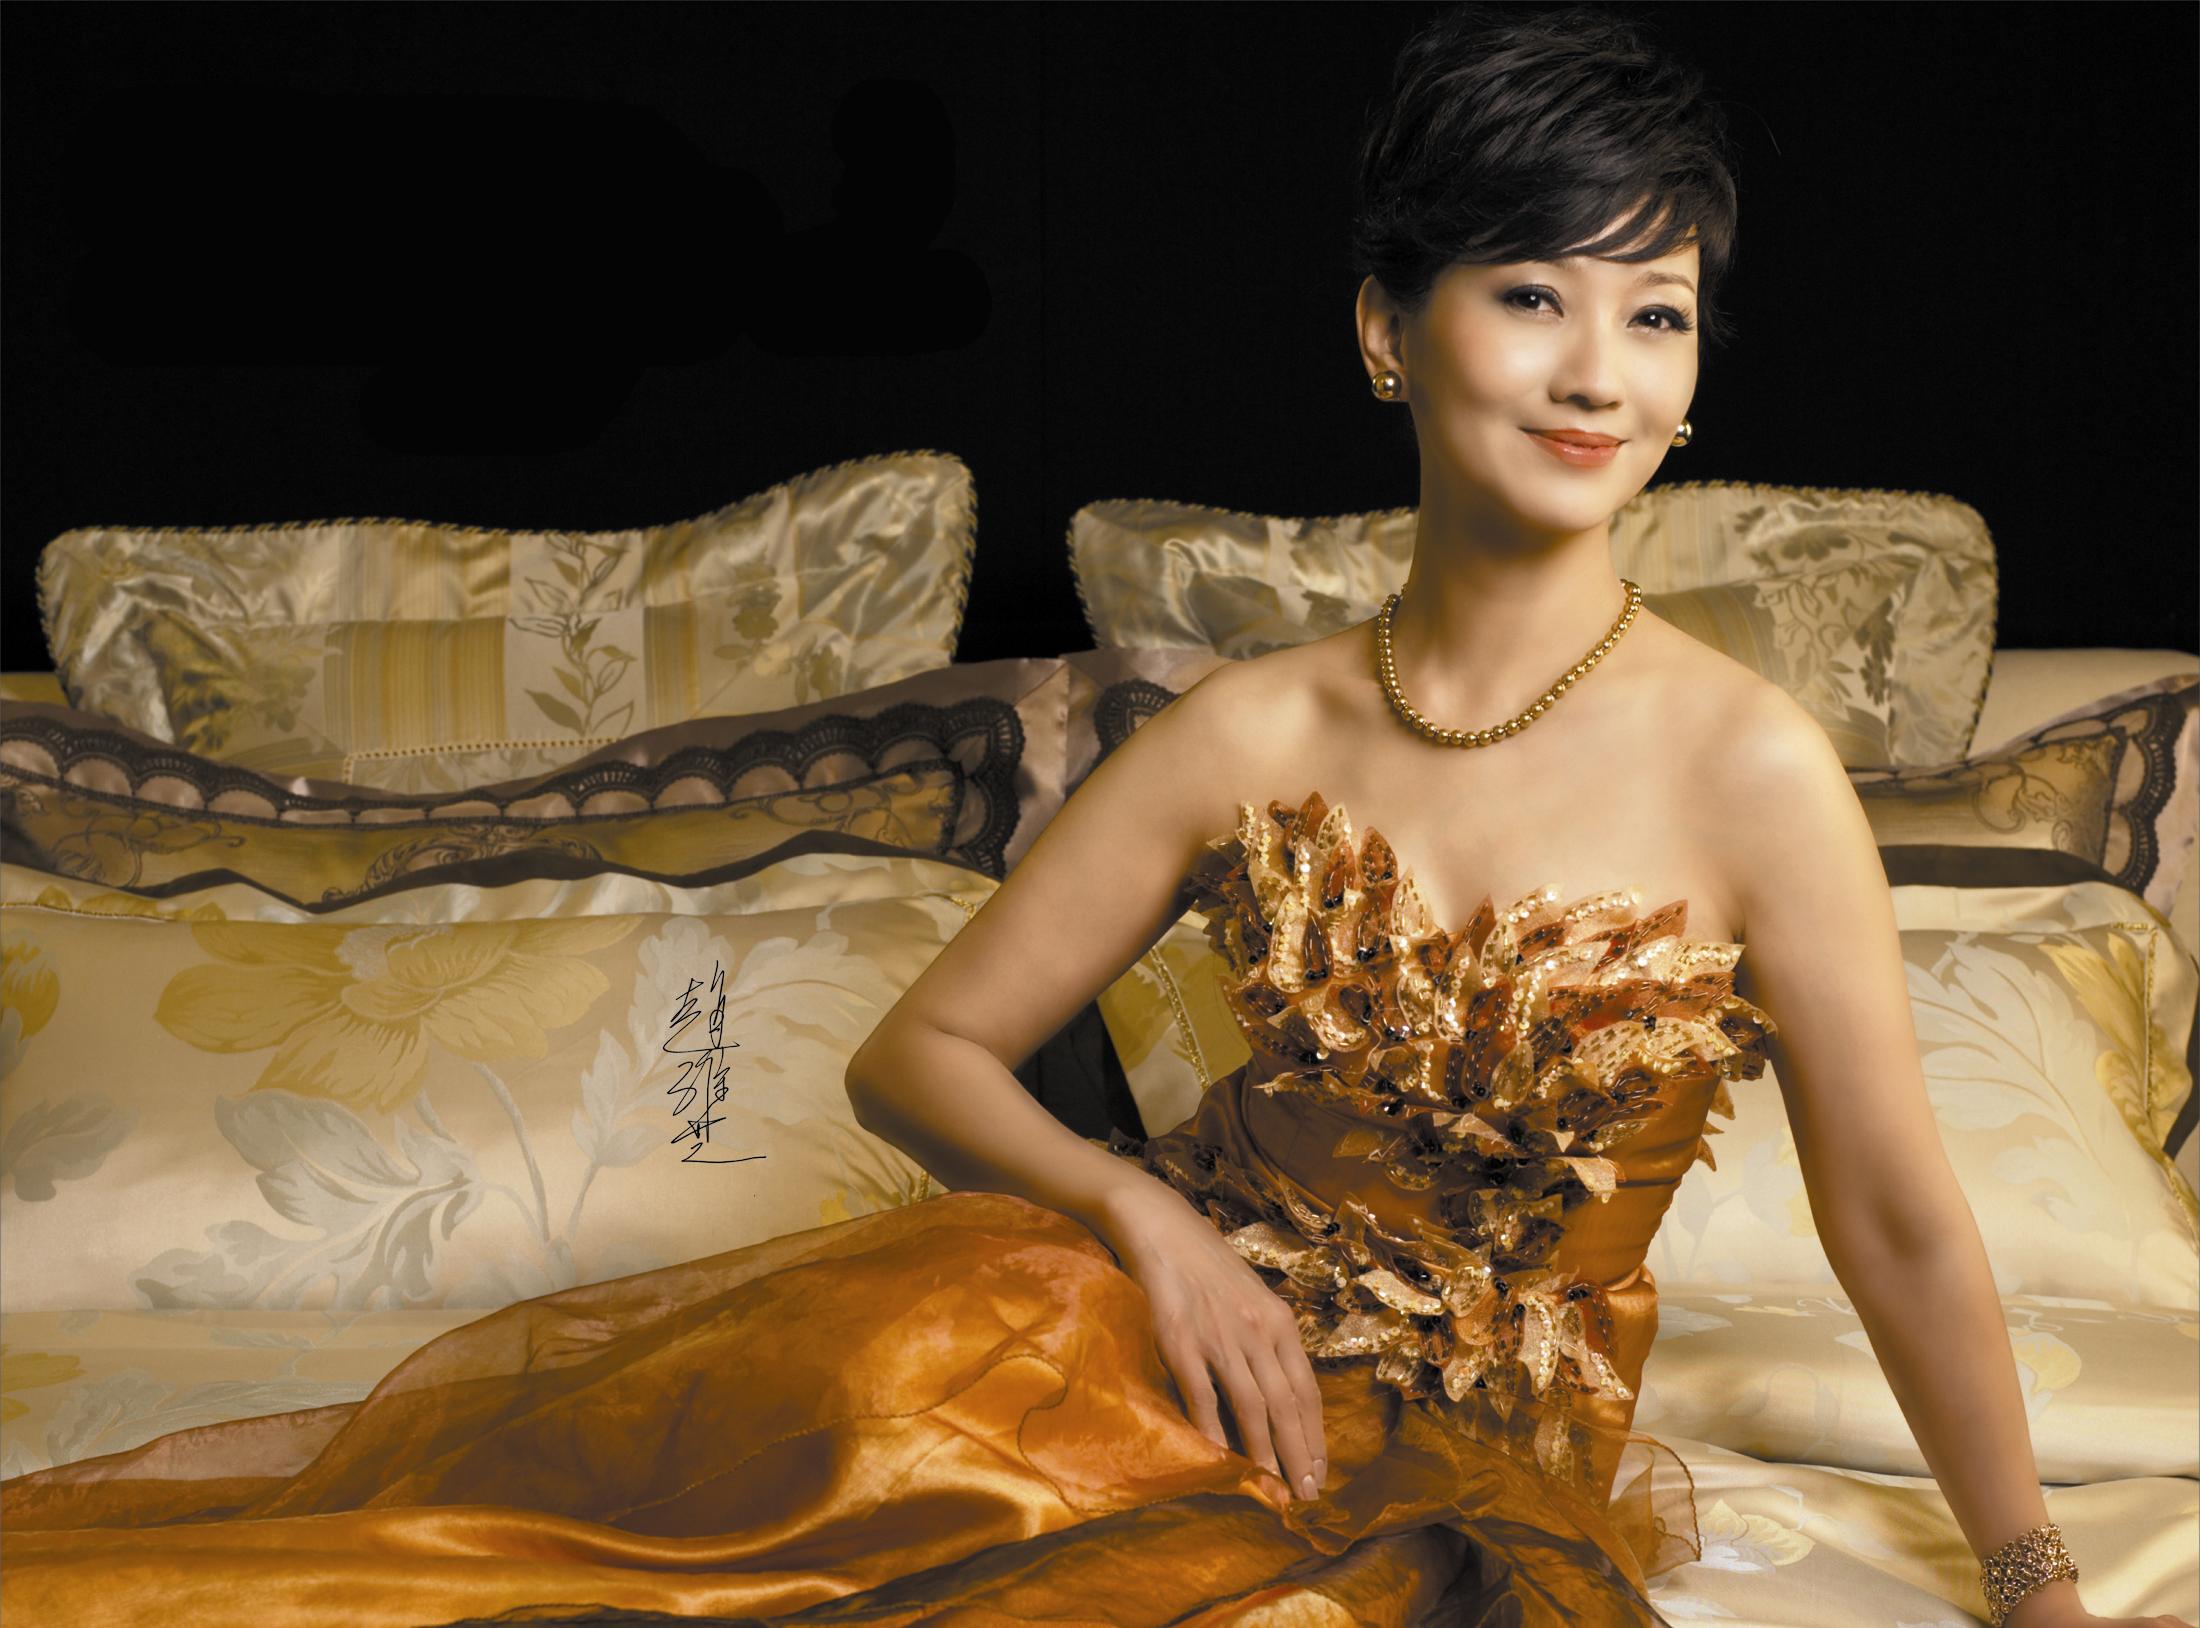 刘晓庆,1955年出生,中国极具传奇色彩的女演员,60 依旧活得美丽任性